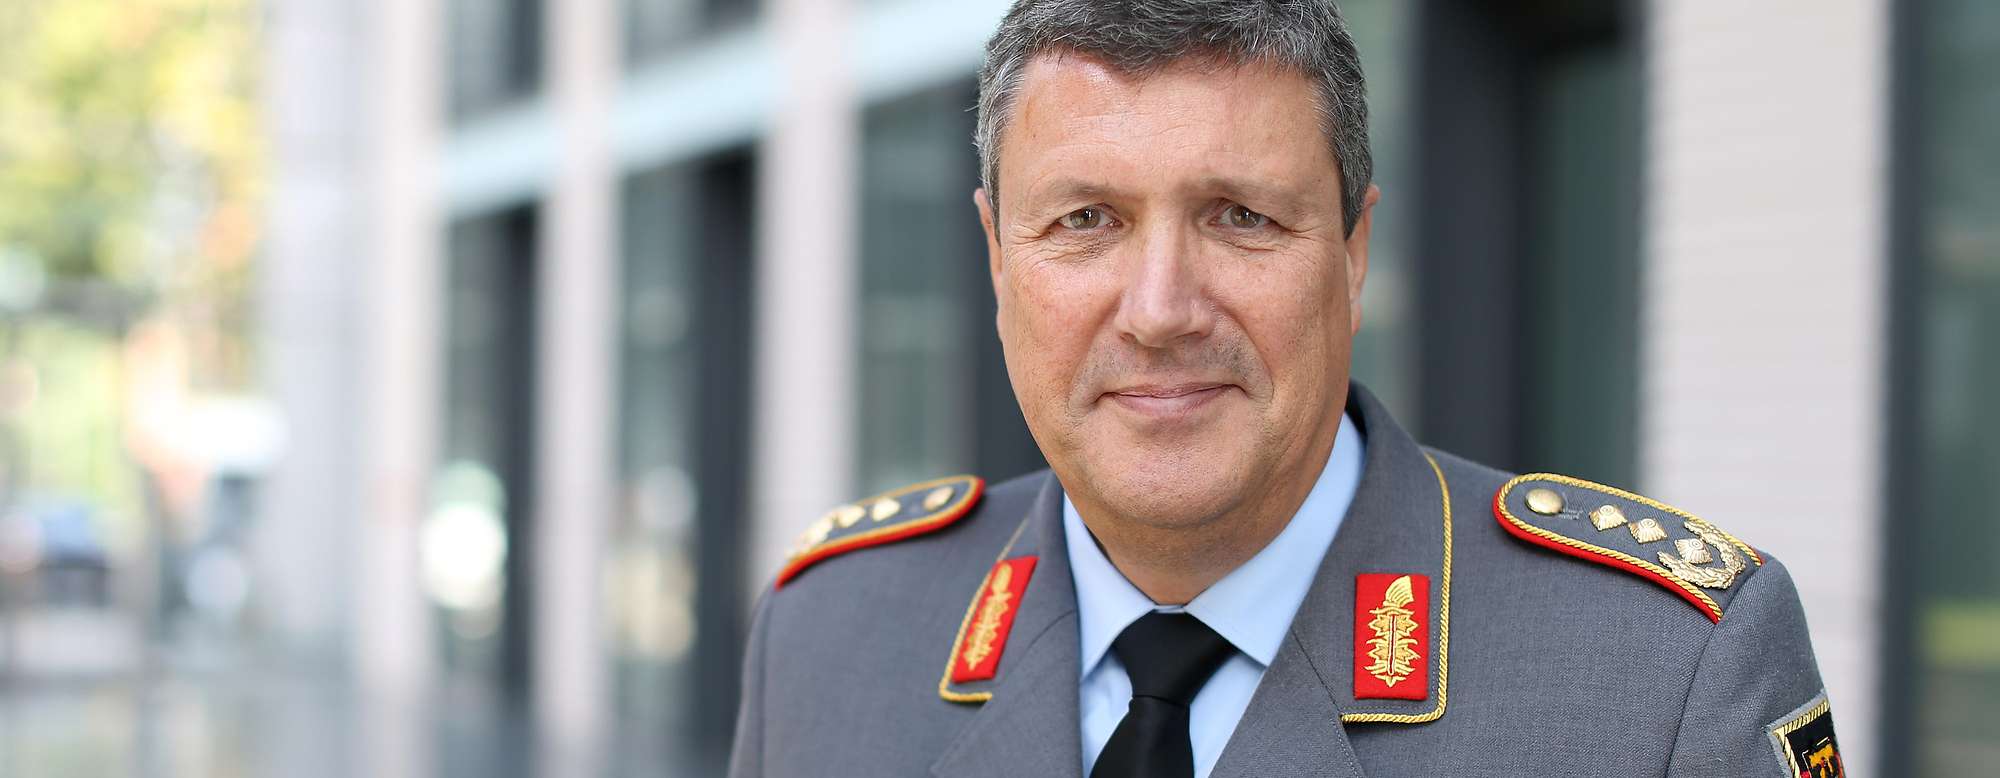 Der Stellvertretende Generalinspekteur der Bundeswehr, Generalleutnant Laubenthal, wechselt zur NATO.